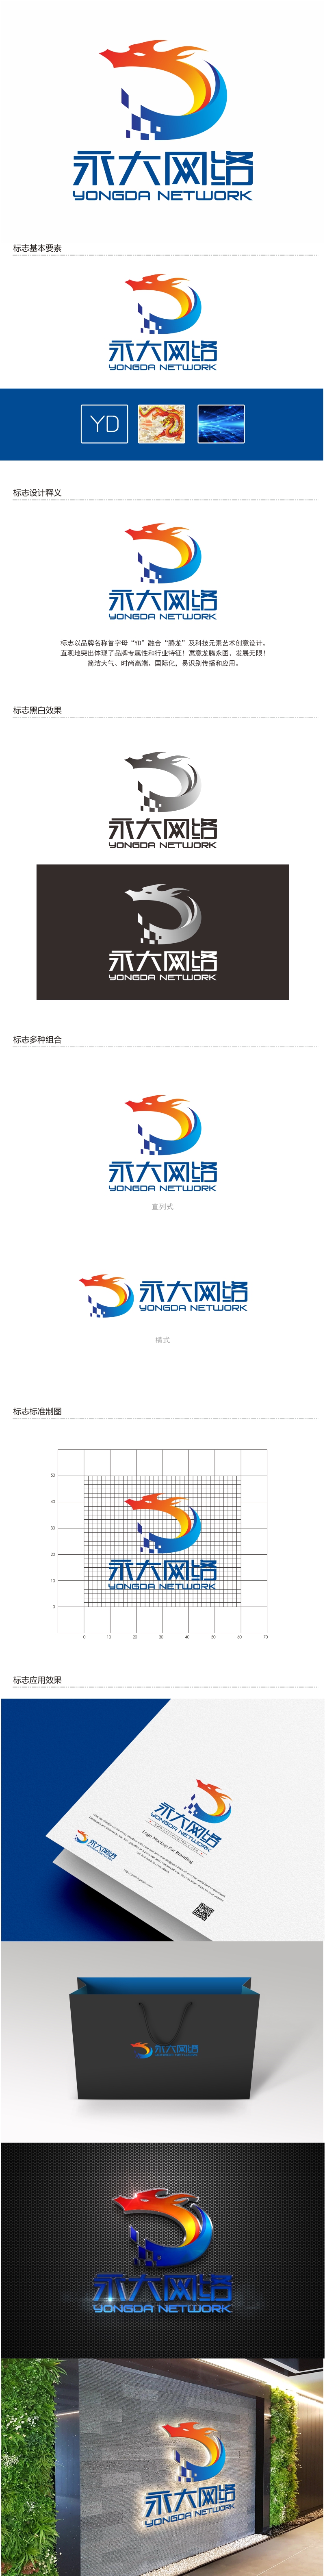 陈国伟的永大网络logo设计